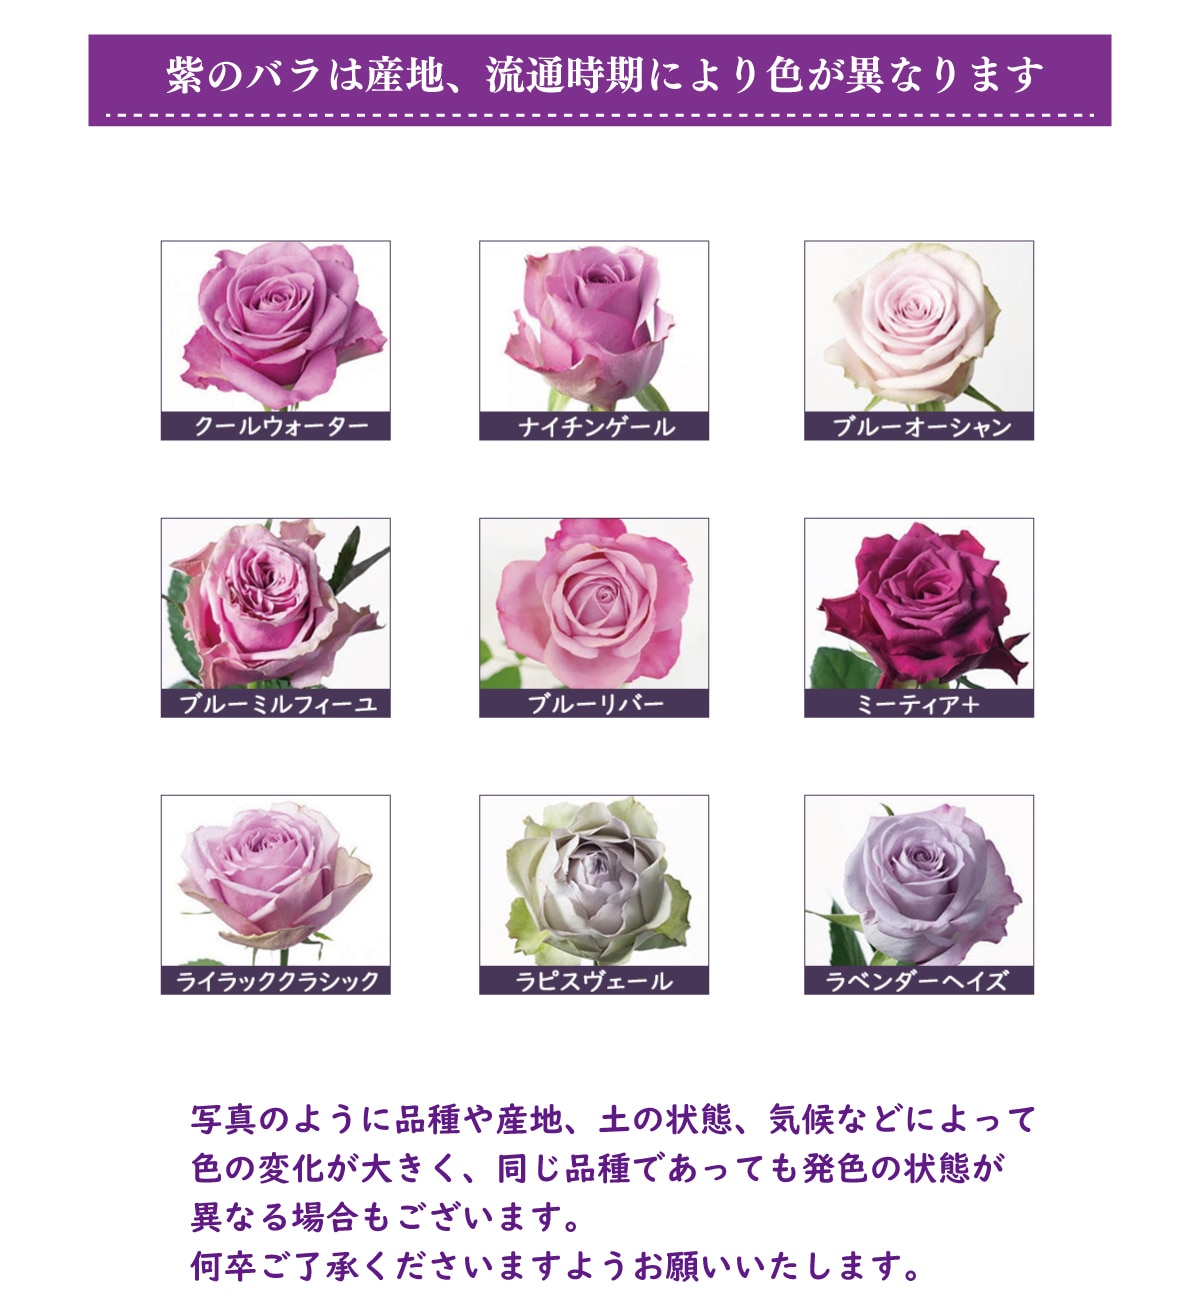 紫バラ77本の花束 生花 ムラサキバラ 東京銀座クオリティ 土日も出荷